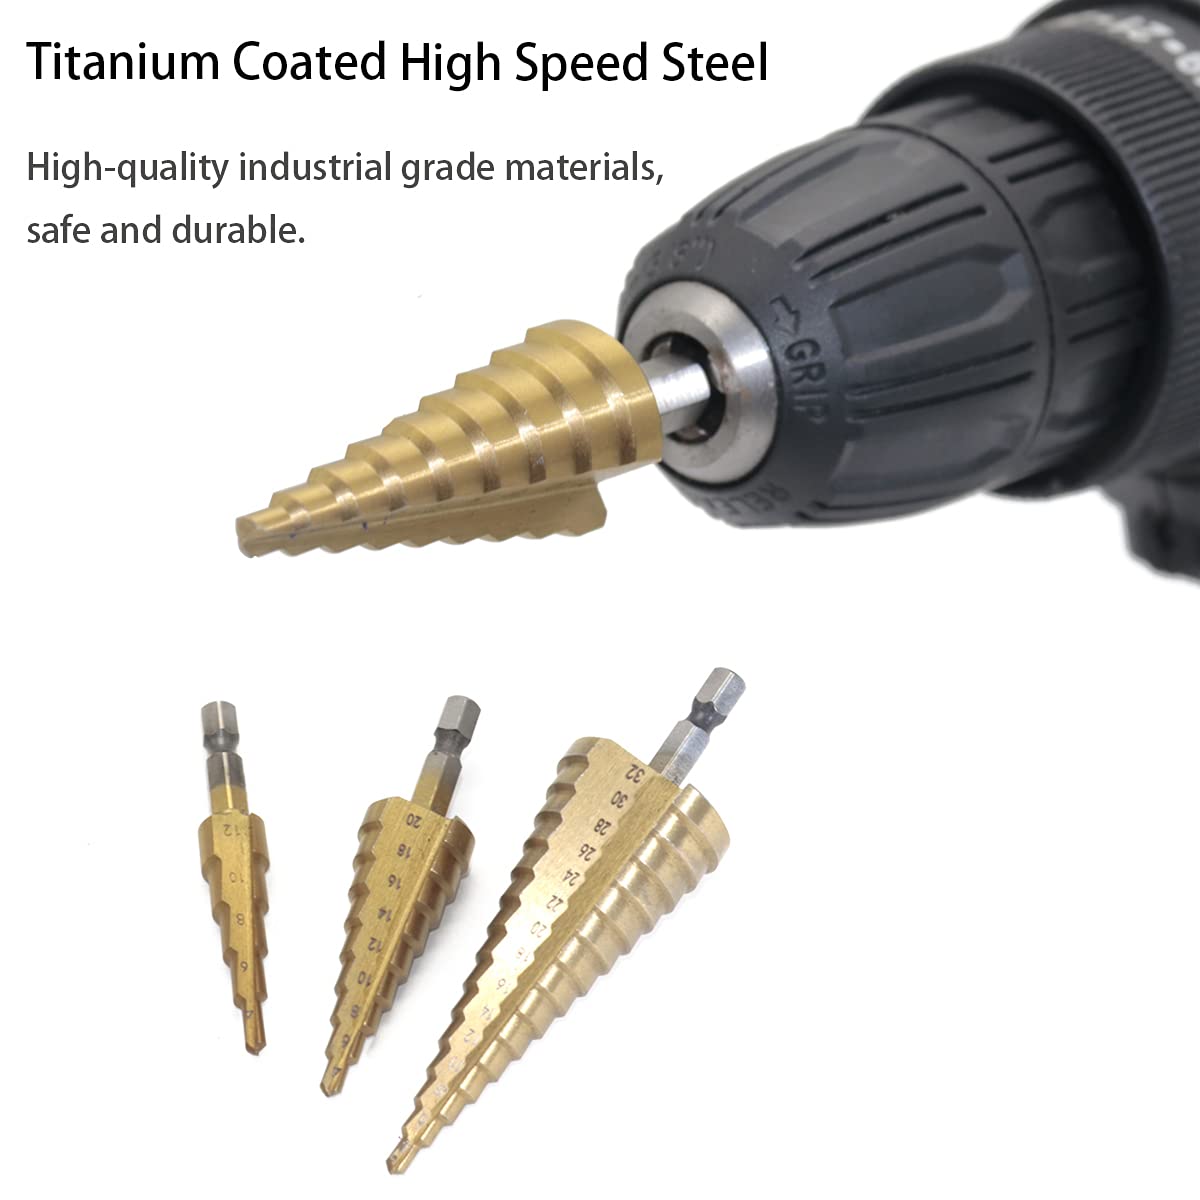 3 Pcs Cone Drill Bits for Metal Wood Plastic High Speed Steel Titanium Coated Metric Step Drill Bit Set (4-12mm, 4-20mm, 4-32mm)